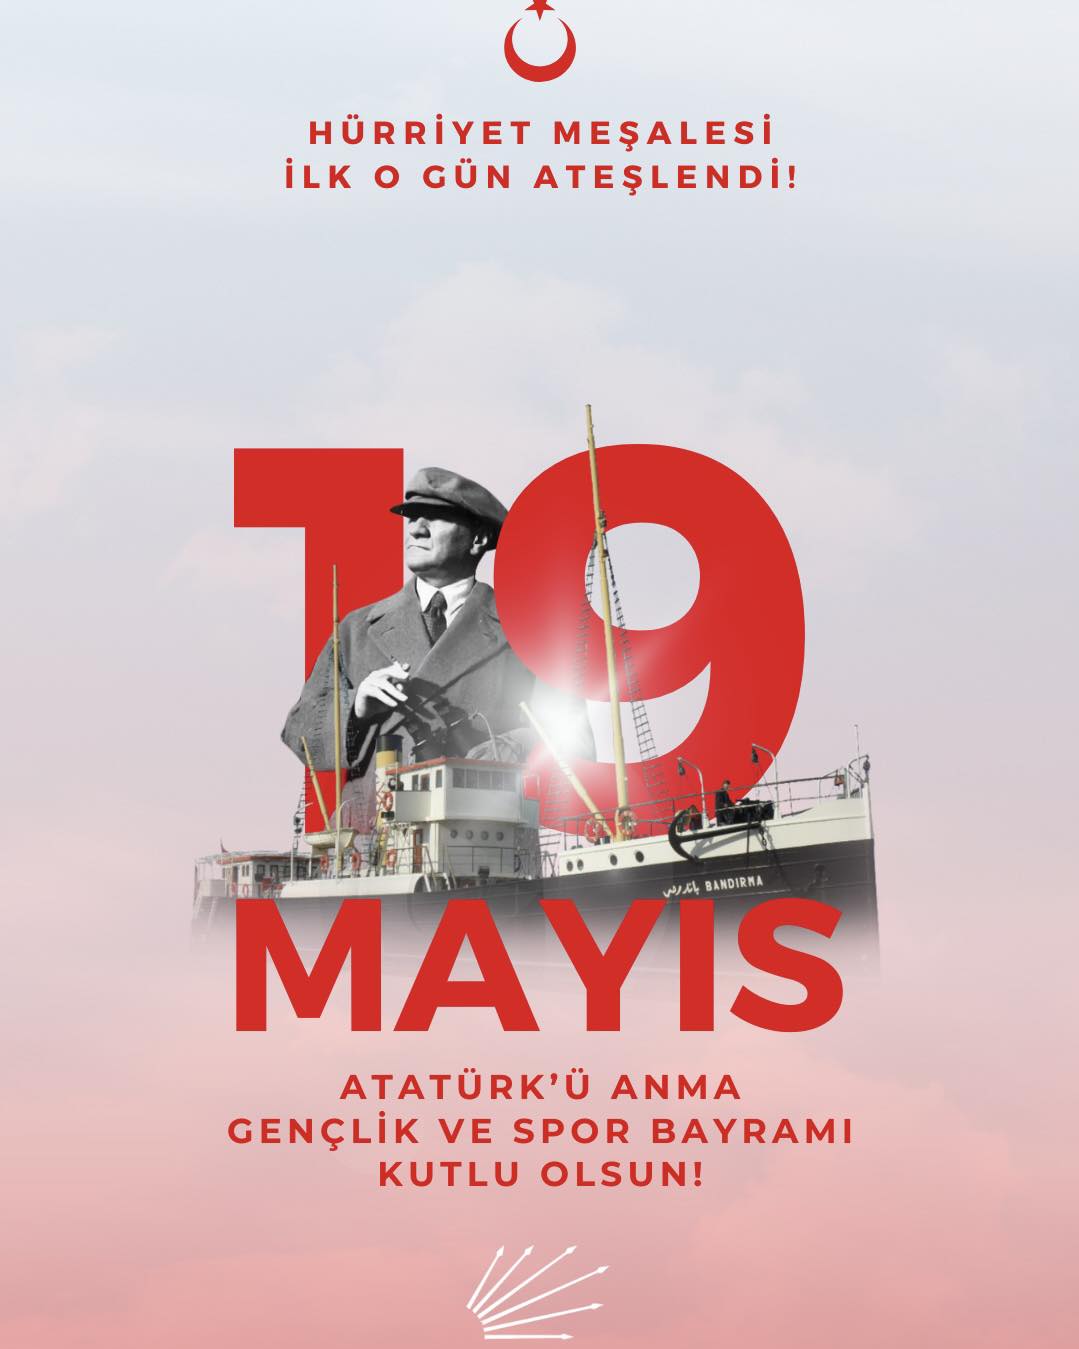 19 Mayıs Atatürk’ü Anma, Gençlik ve Spor Bayramı'nın Önemi Vurgulandı